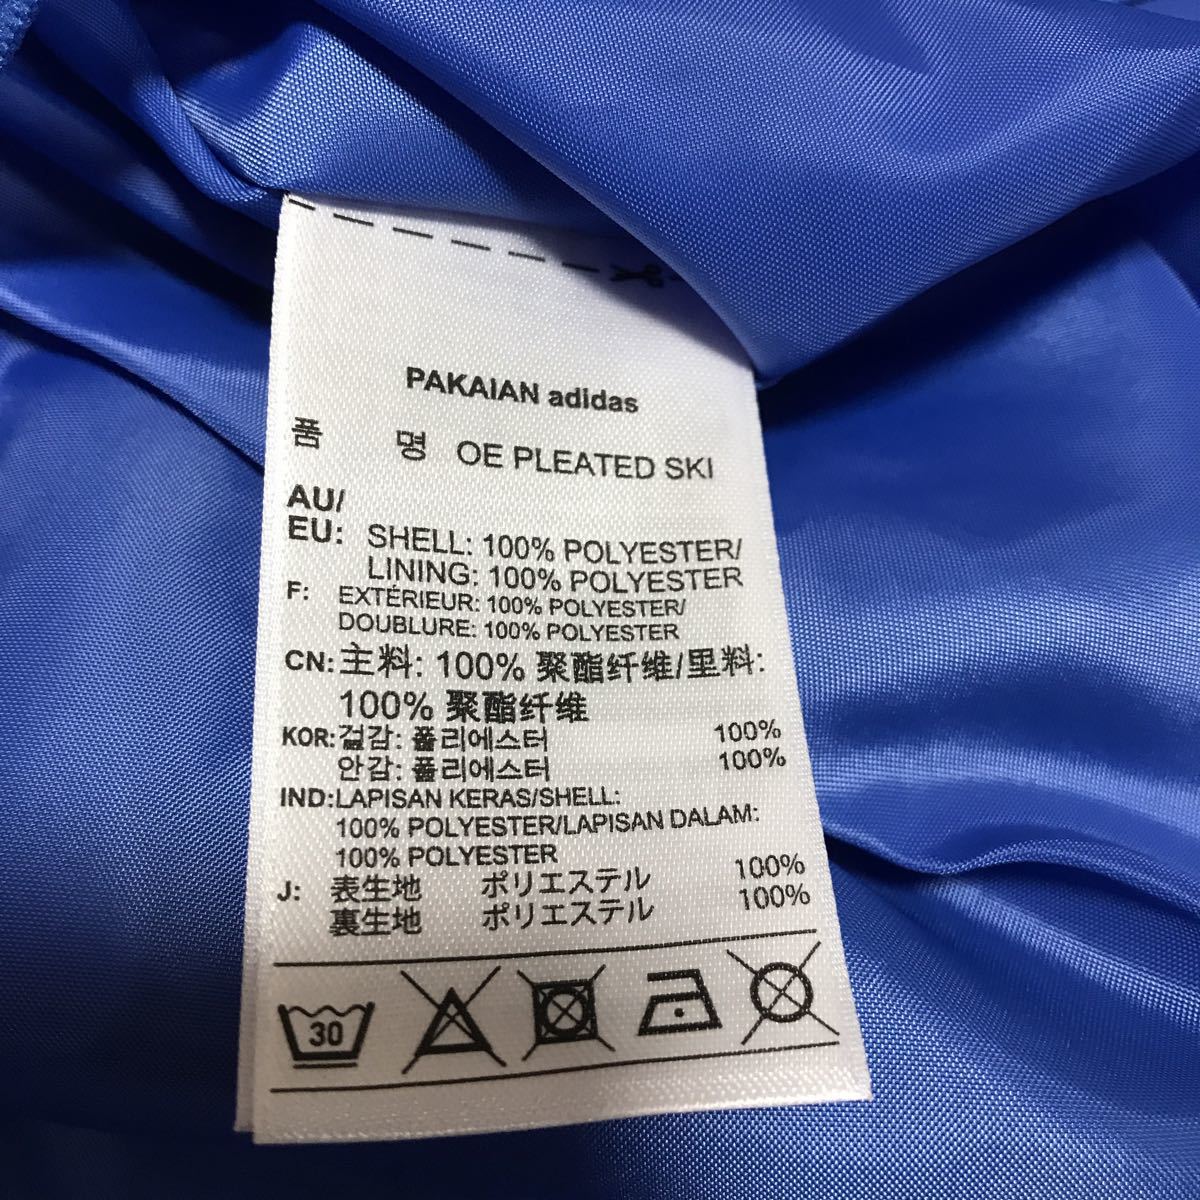  новый товар с биркой adidas Adidas юбка в складку S размер голубой обычная цена 7990 иен 